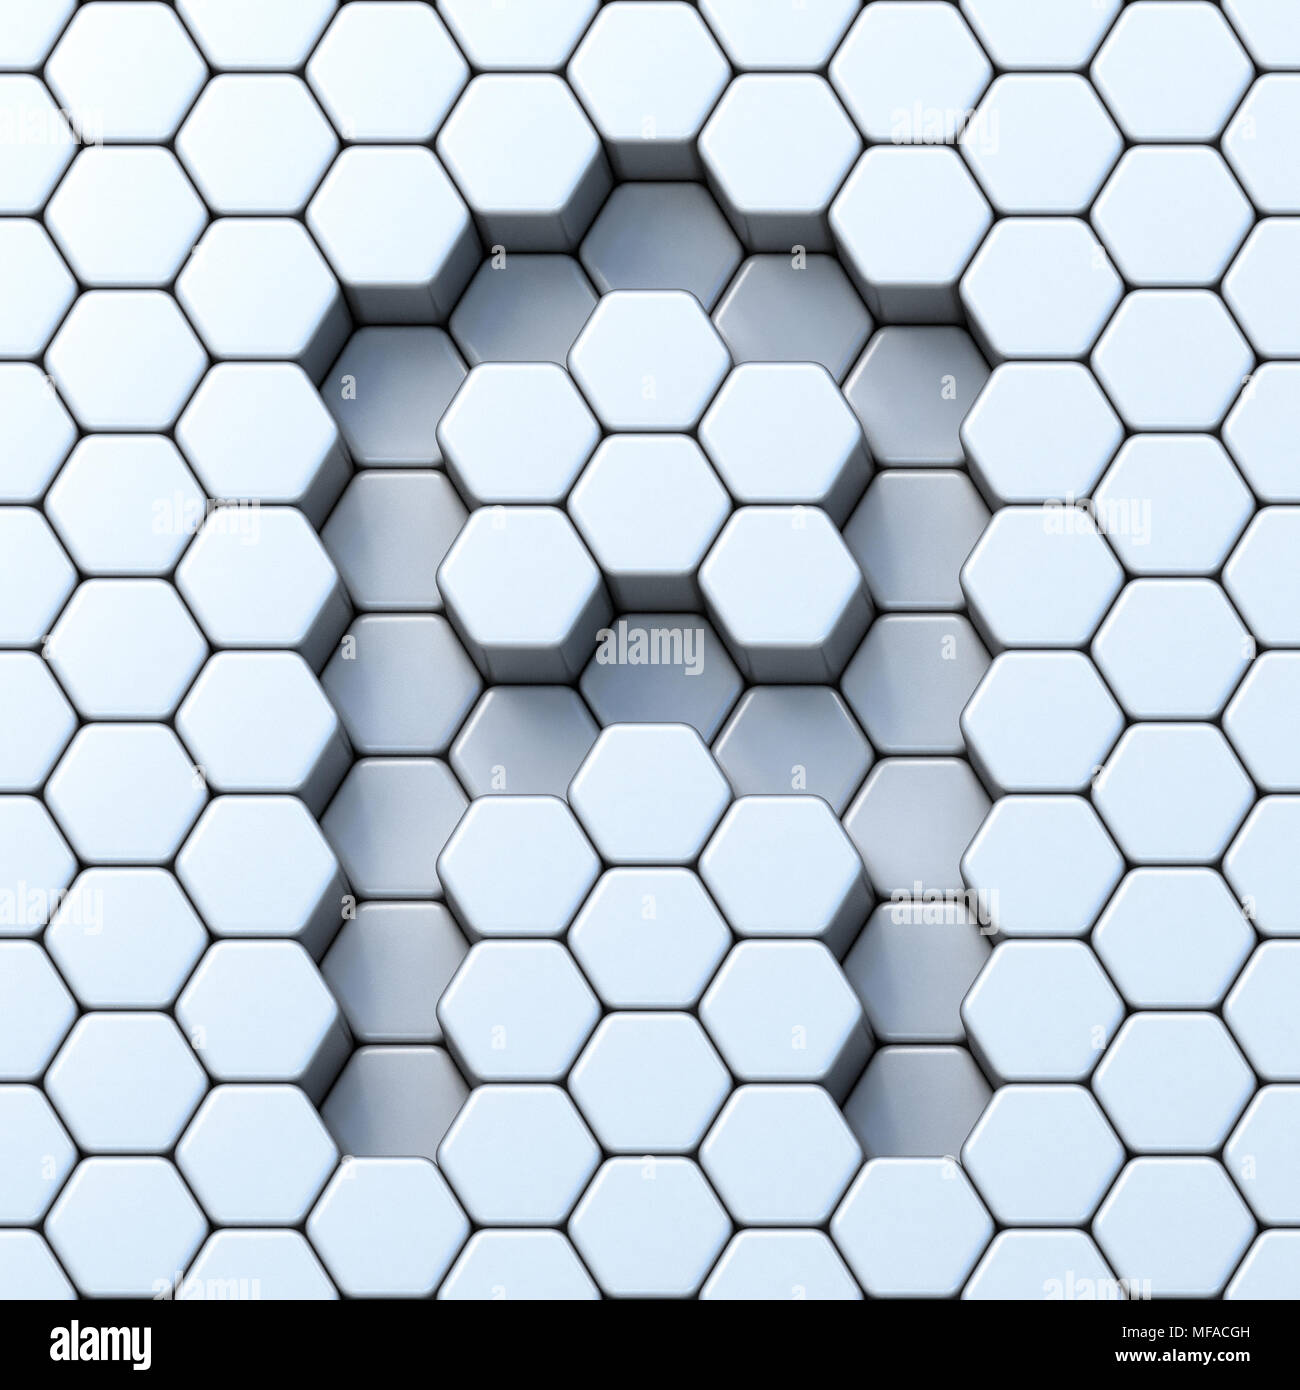 Hexagonal grid letter A 3D render illustration Stock Photo